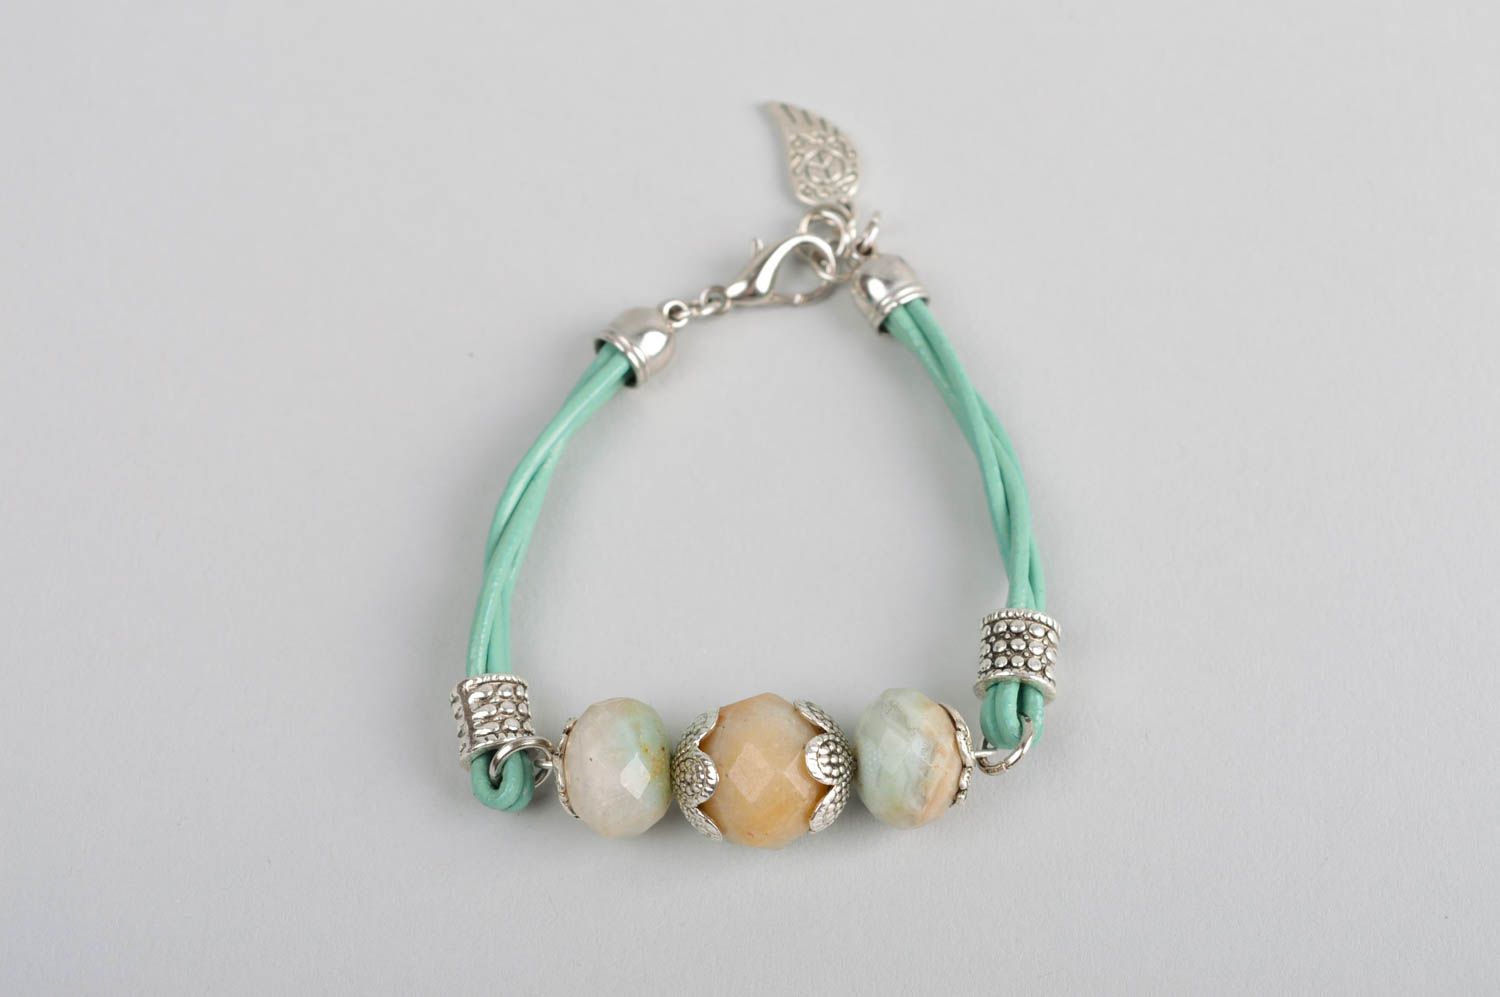 Handmade gemstone bracelet leather bracelet beaded bracelet designs gift ideas photo 2